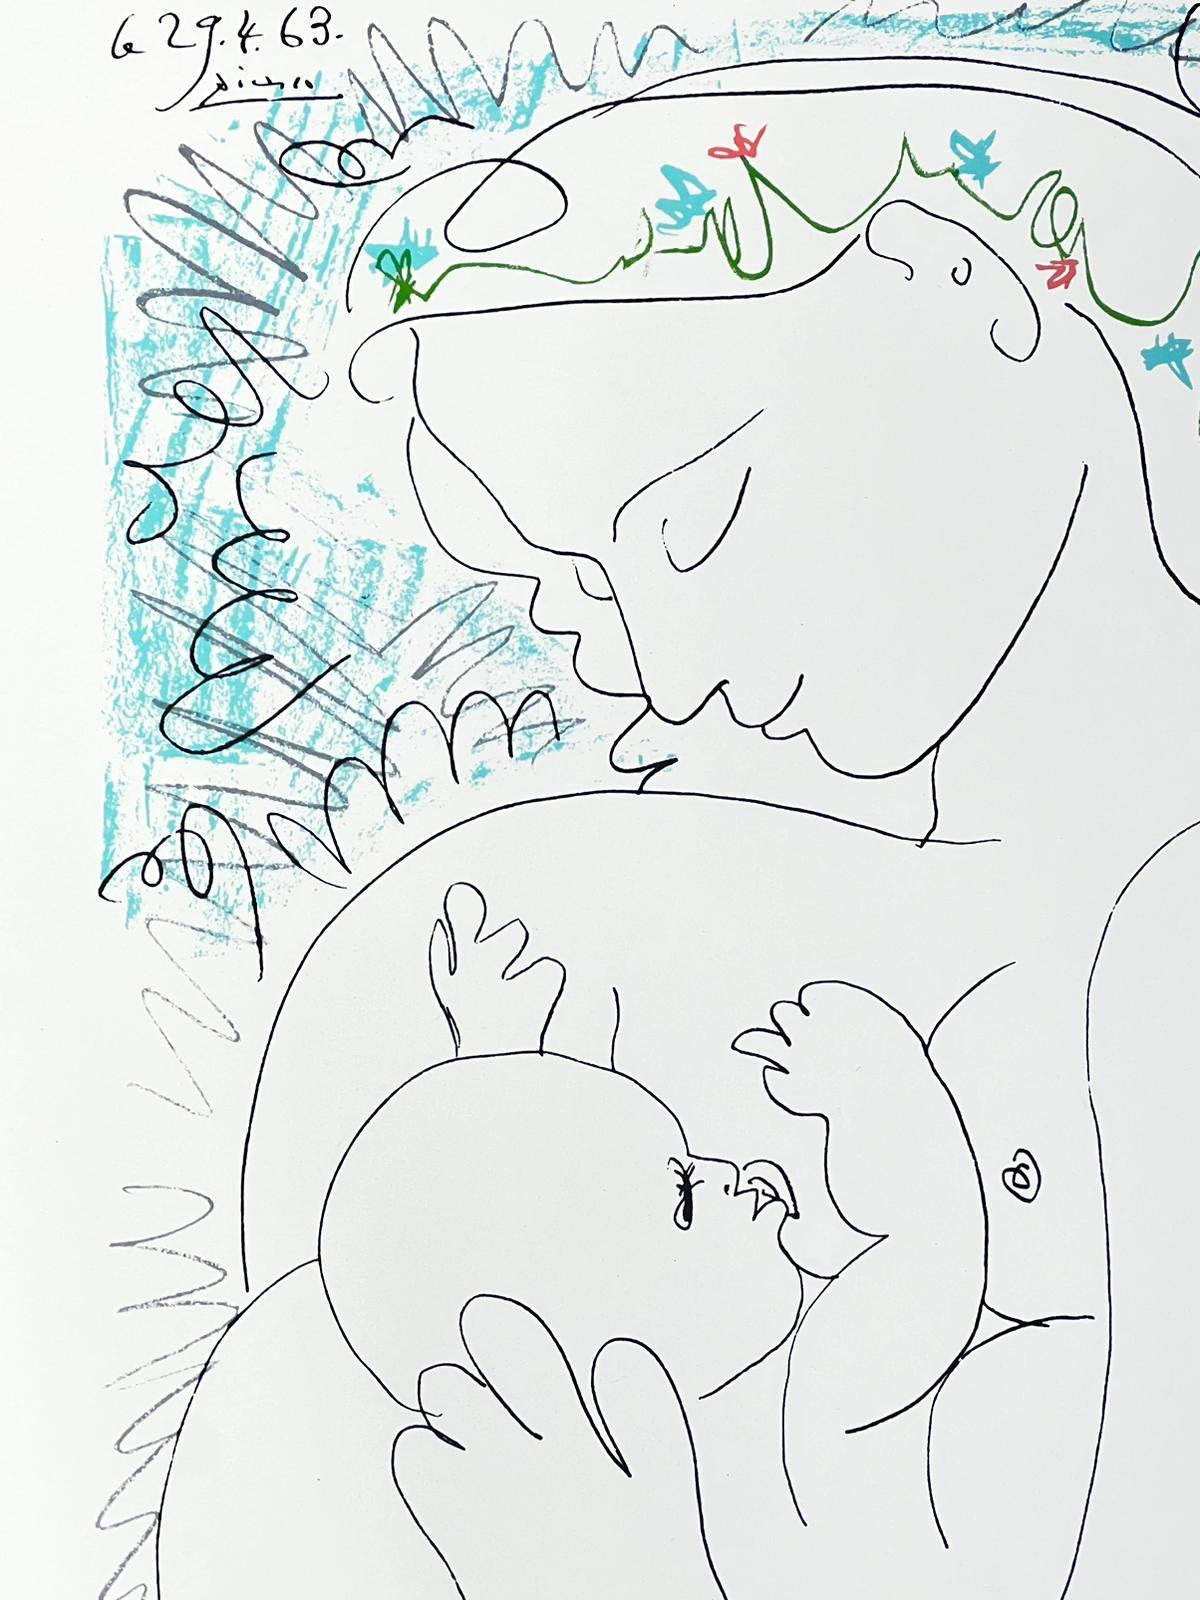 Maternitie
Nach Pablo Picasso (1881 - 1973)
erschienen bei SPADEM 1983, limitiert auf 1000 Exemplare
Druck auf dickem Papier, ungerahmt
Druck: 26 x 19,75 Zoll
Provenienz: Privatsammlung, Frankreich
Zustand: sehr guter und gesunder Zustand 
